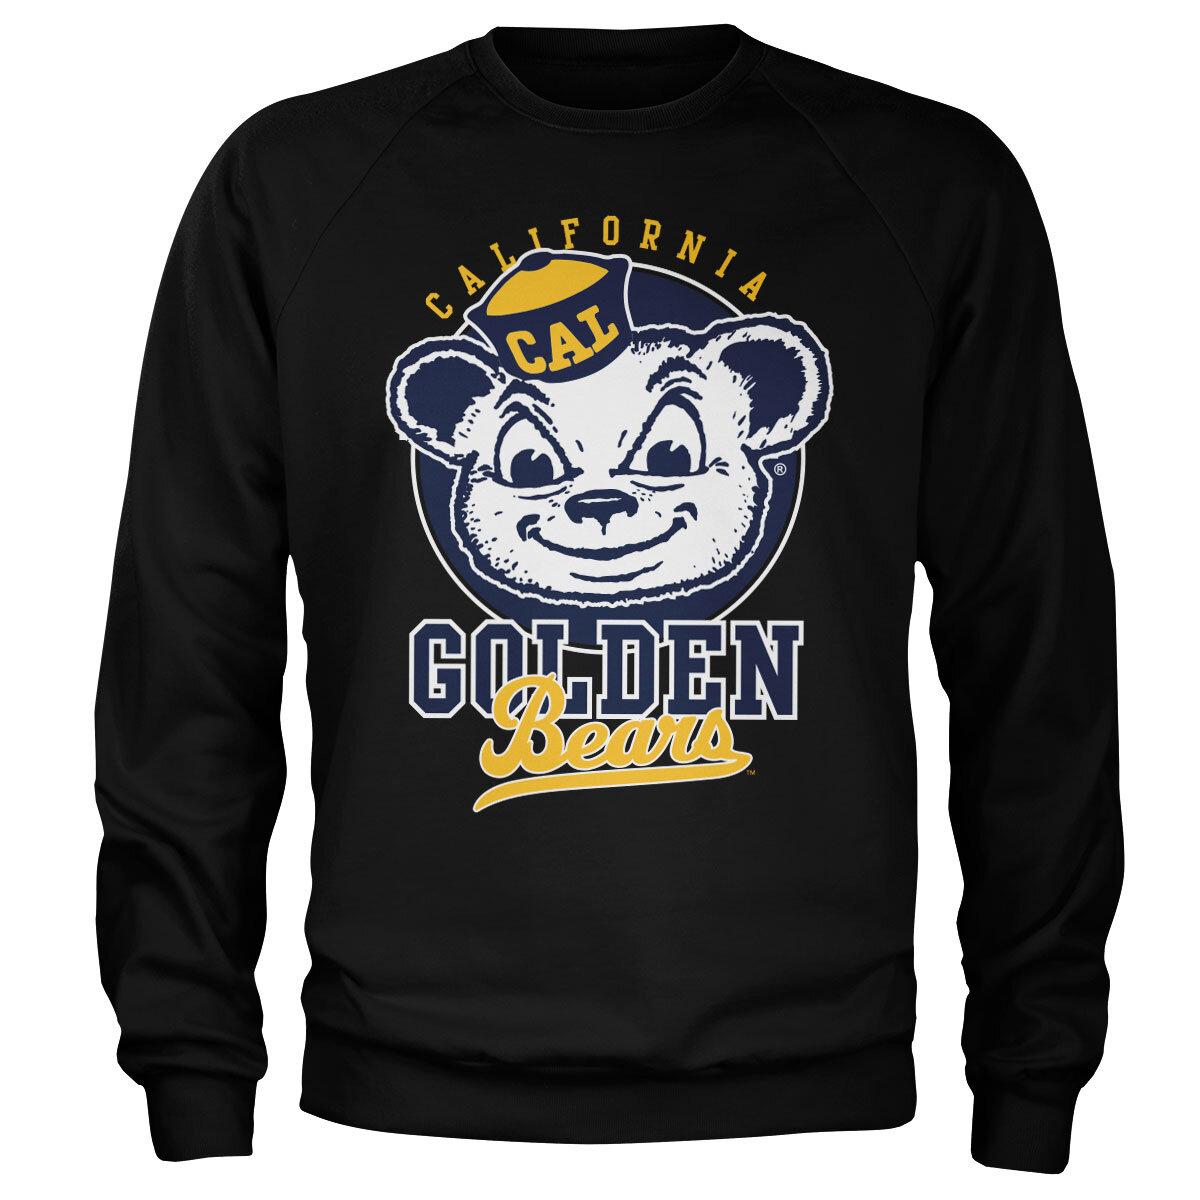 California Golden Bears Sweatshirt